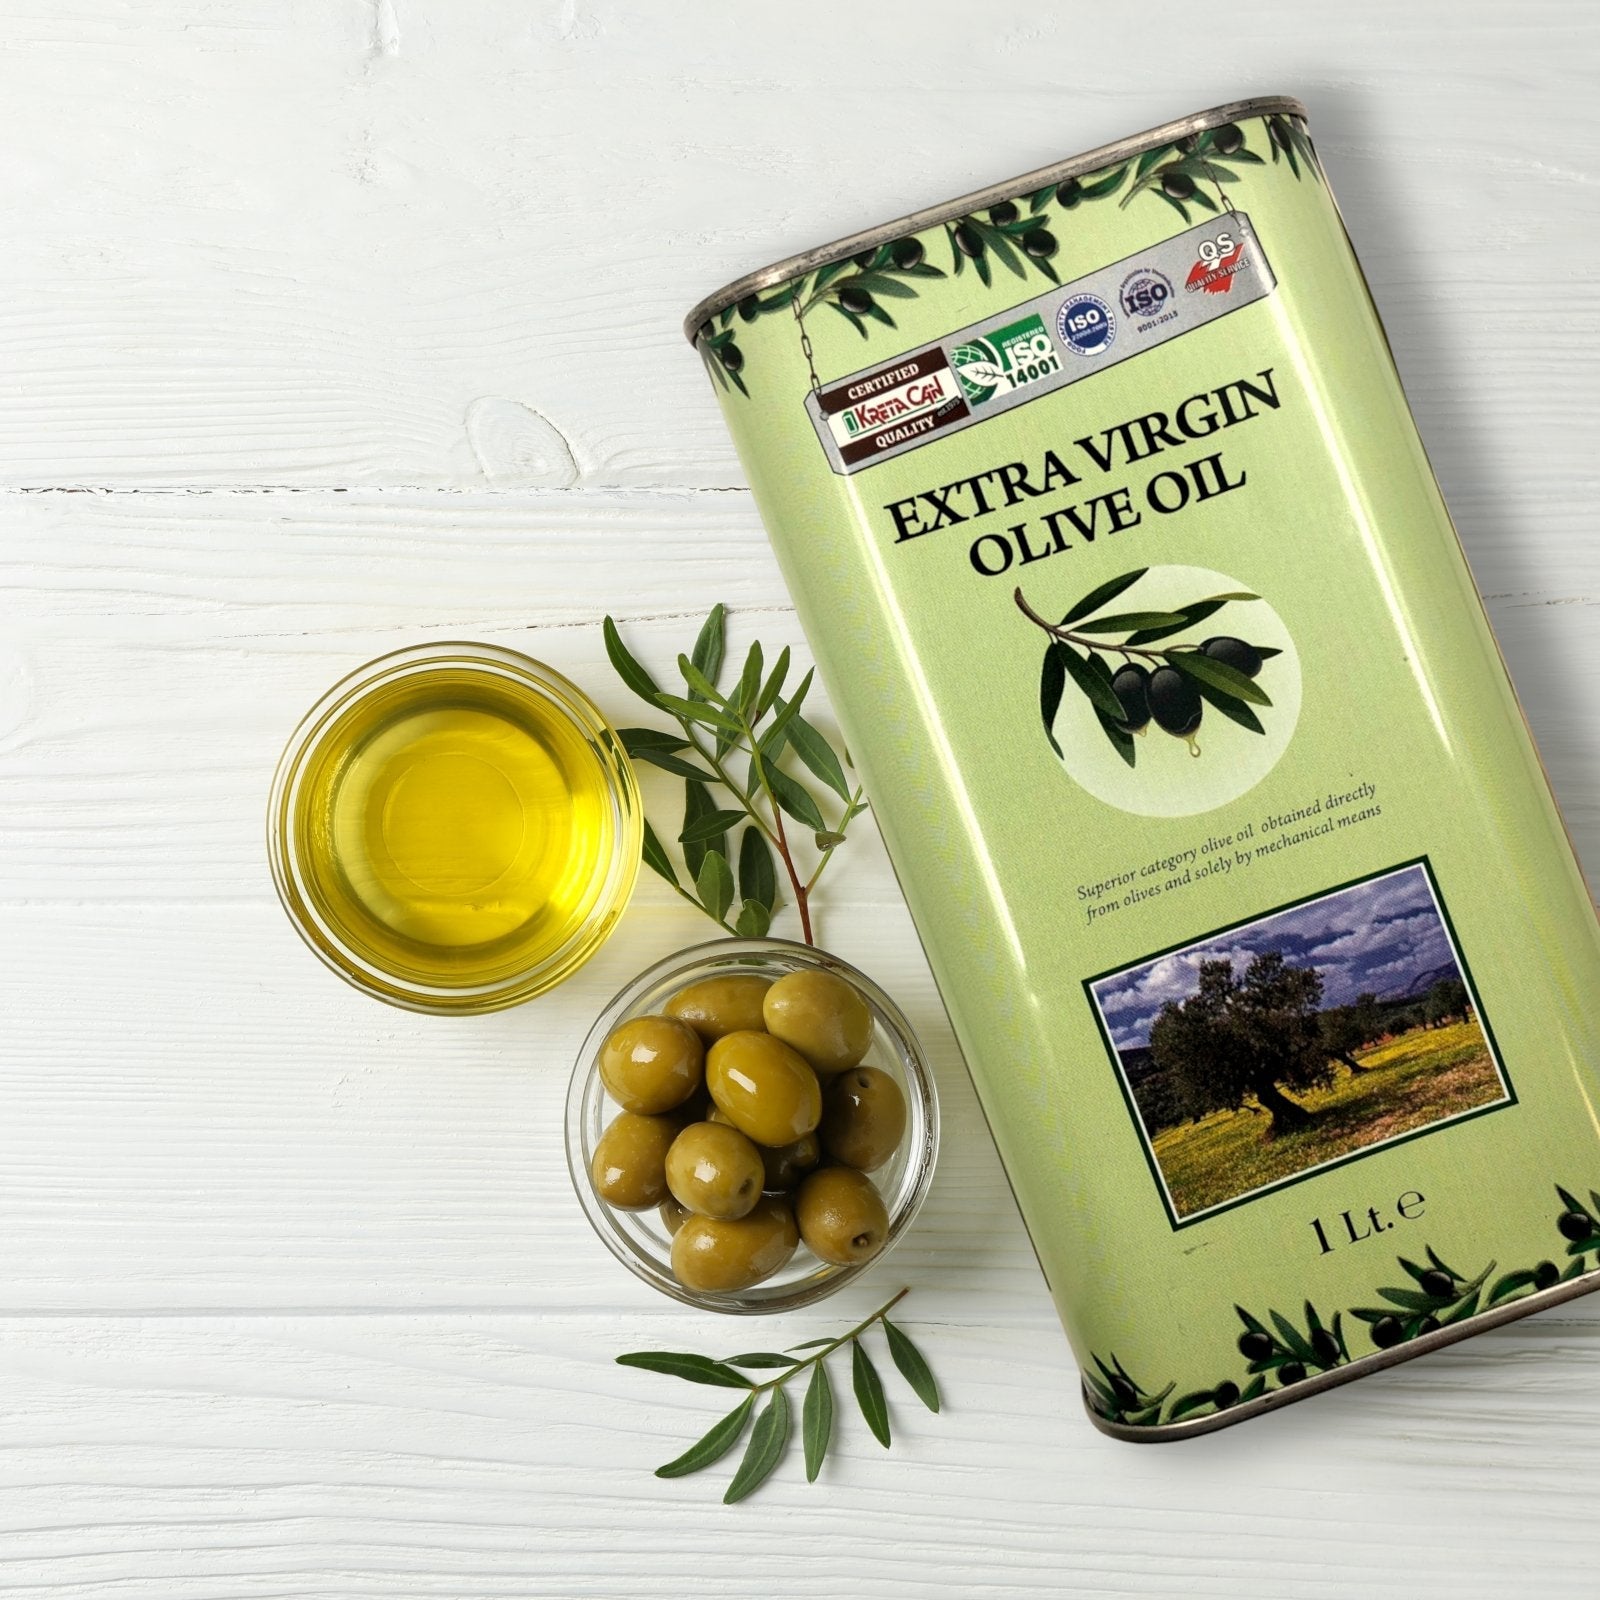 Griechisches Olivenöl nativ extra aus Kreta - Aktionspaket - Einkauf aktuell - OlivenZauber - Olivenöl neu erleben